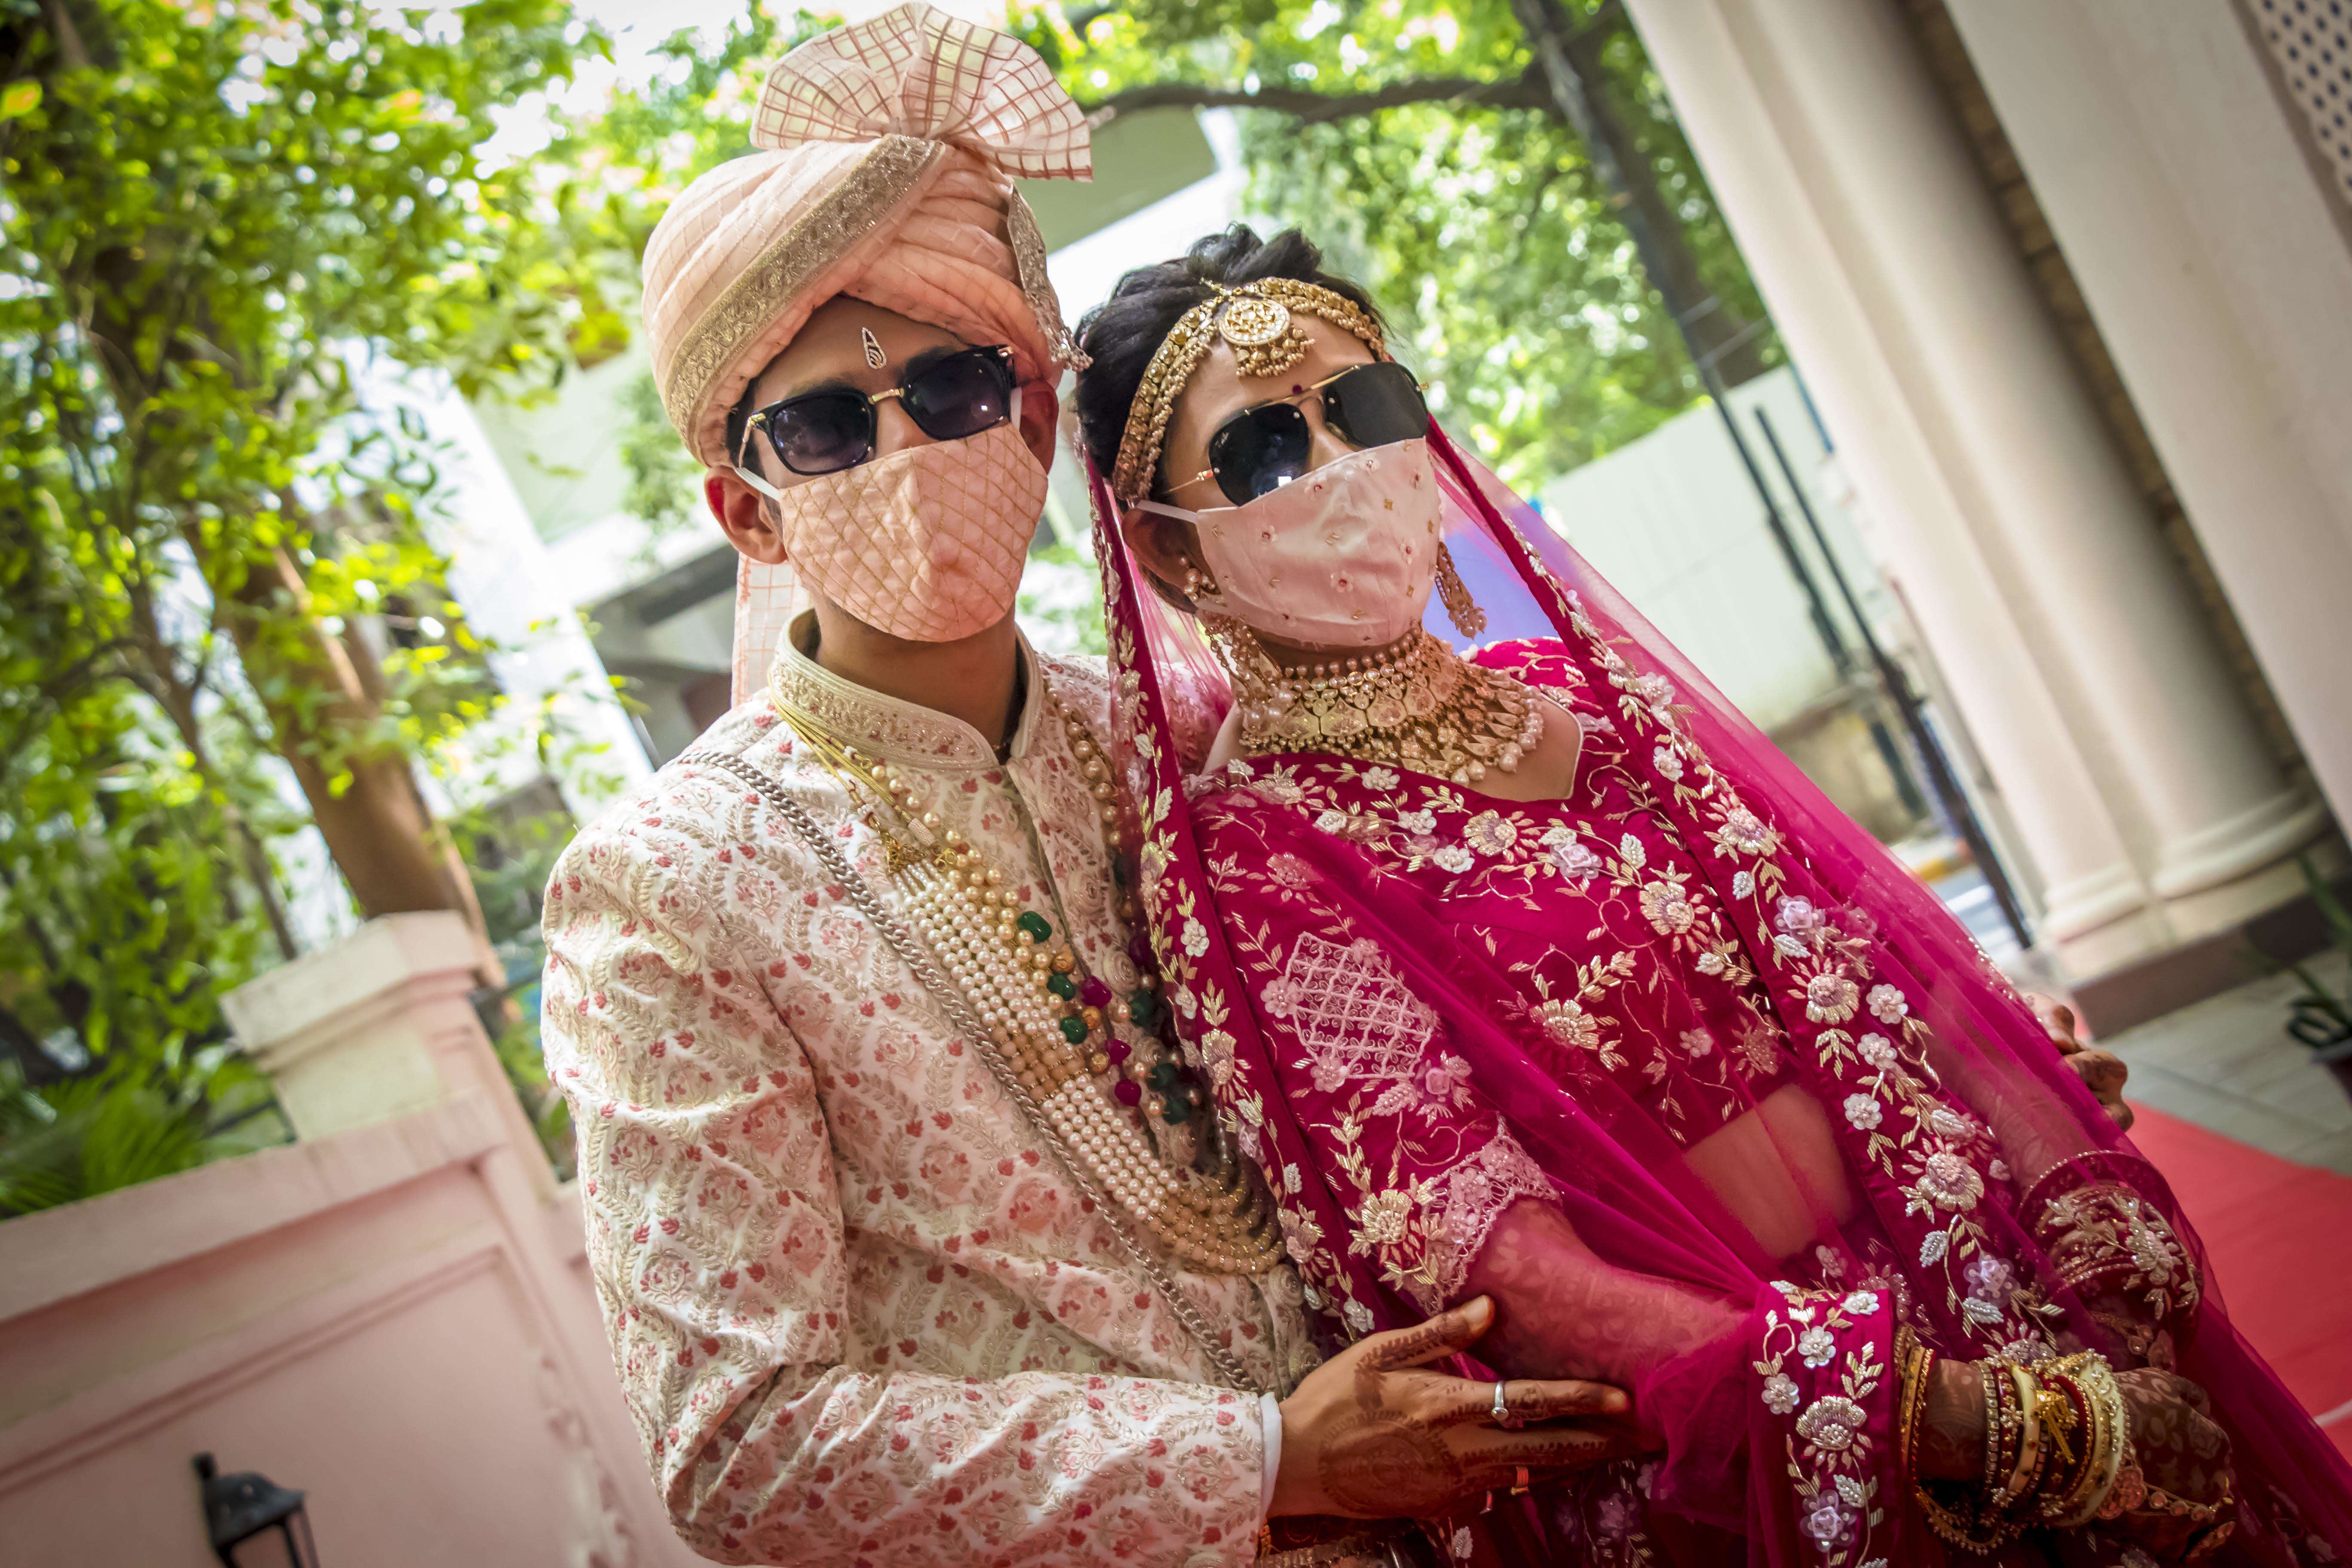 Masken erhalten in dieser Shaadi-Saison ein luxuriöses und stilvolles Makeover 